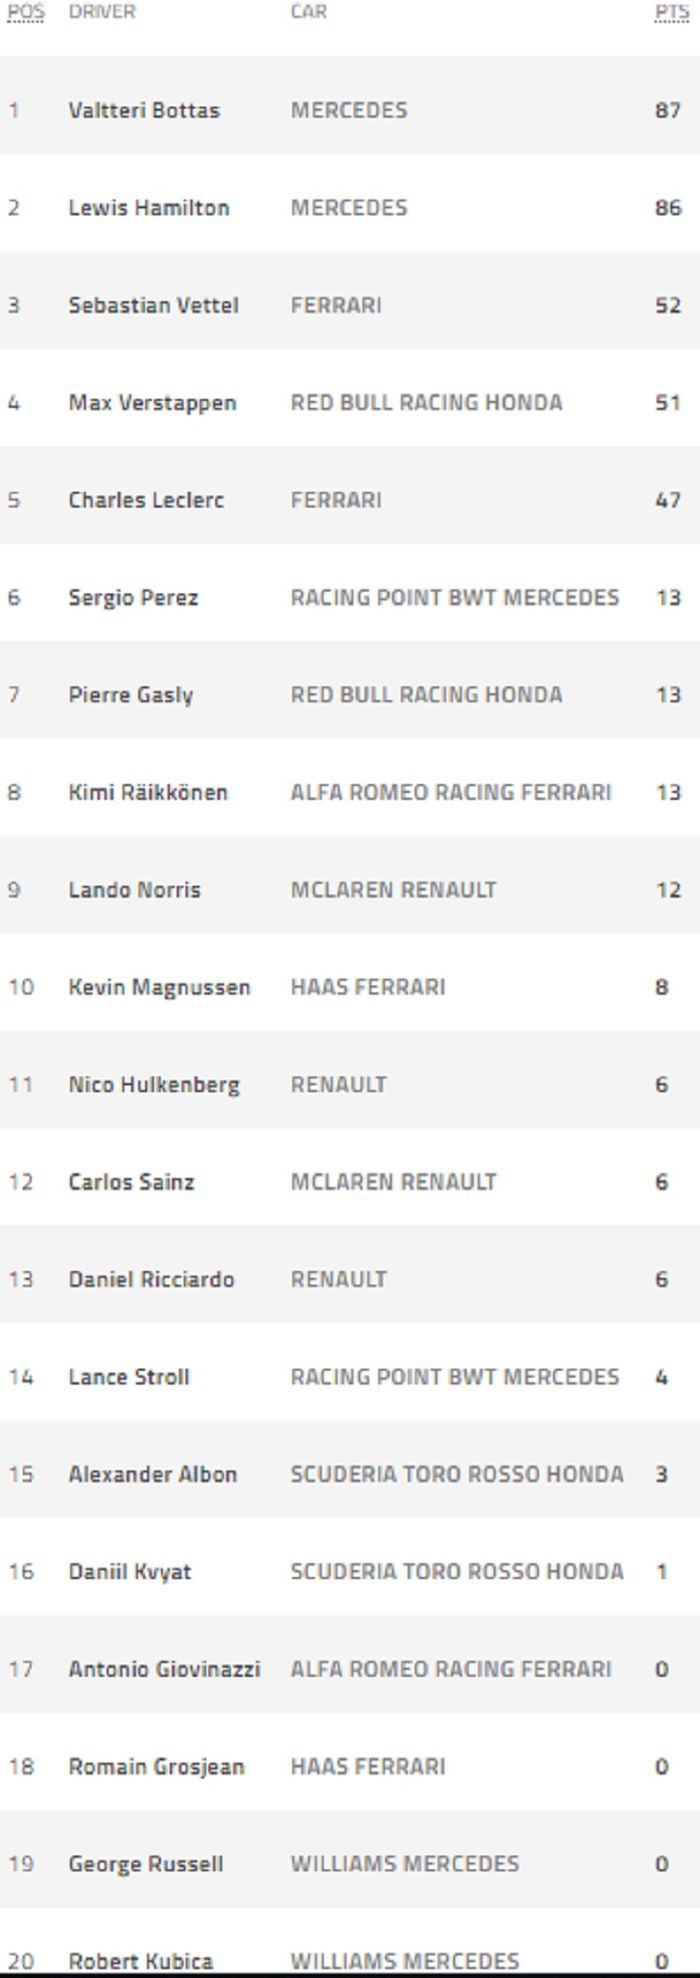 Valtteri Bottas berhasil merebut puncak klasemen dari Lewis Hamilton dengan koleksi 87 poin, berikut klasemen usai F1 Azerbaijan 2019